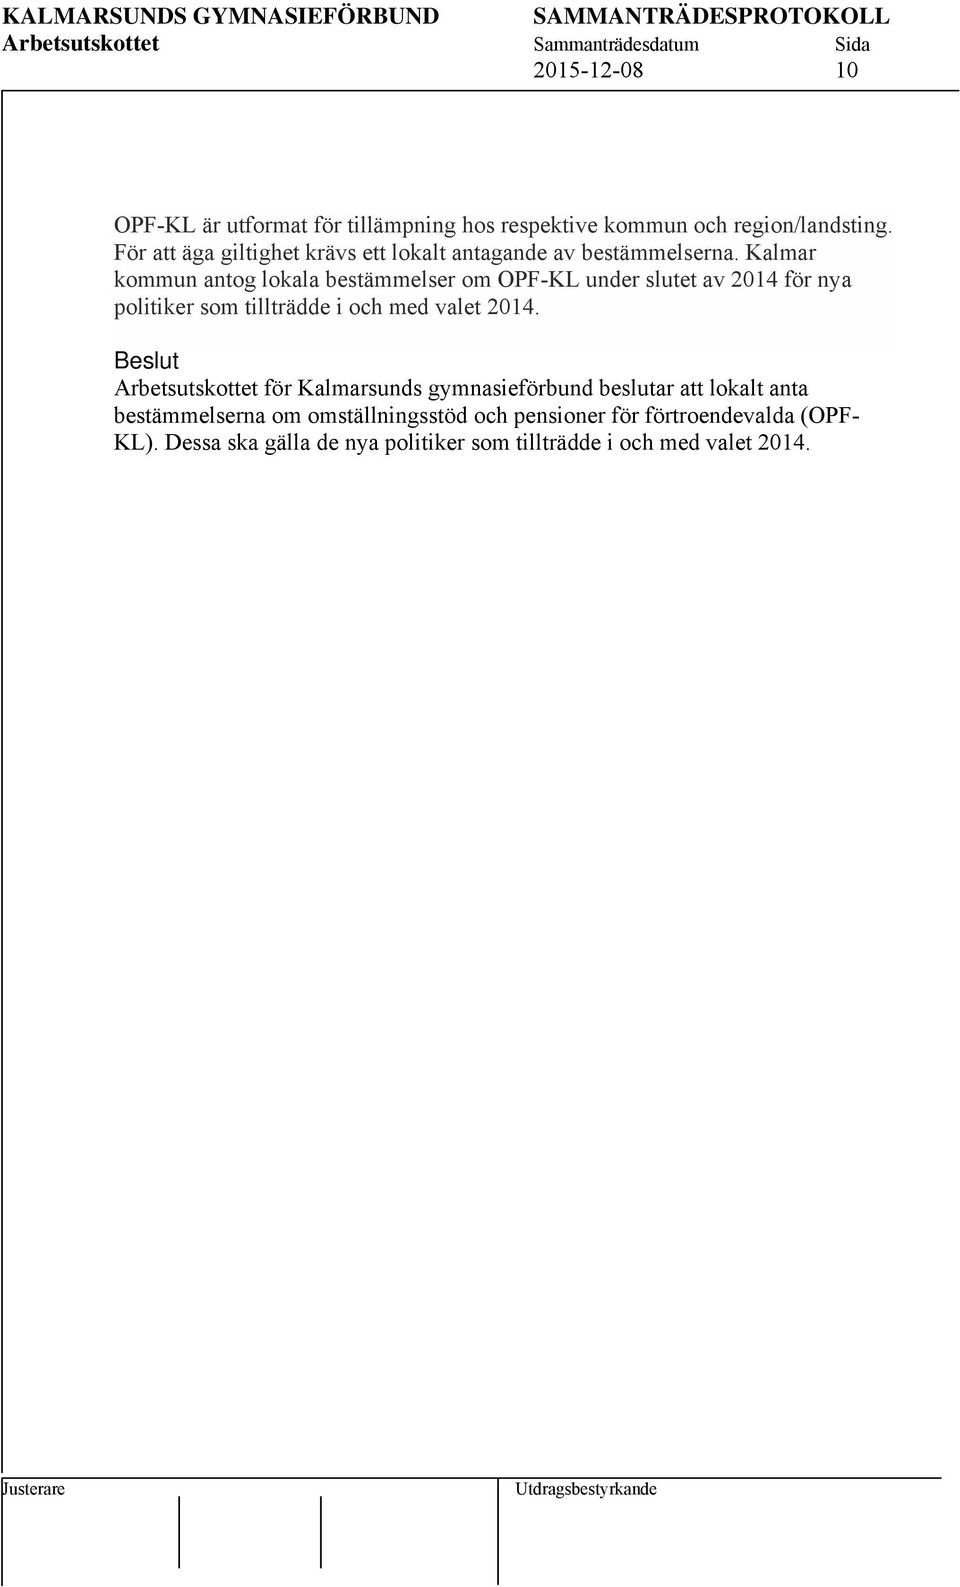 Kalmar kommun antog lokala bestämmelser om OPF-KL under slutet av 2014 för nya politiker som tillträdde i och med valet 2014.